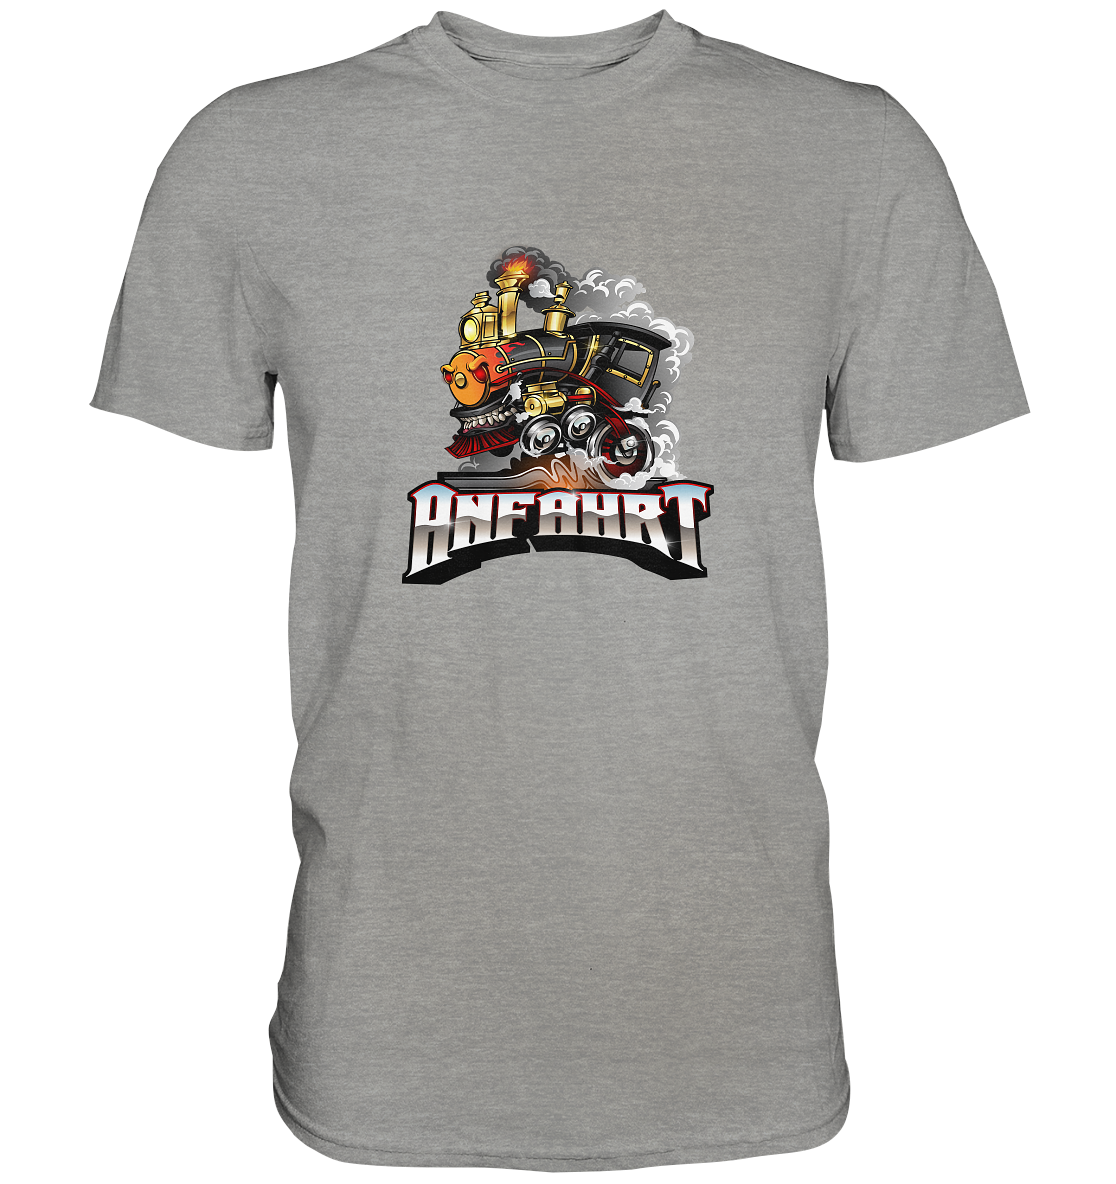 ANFAHRT - Basic Shirt